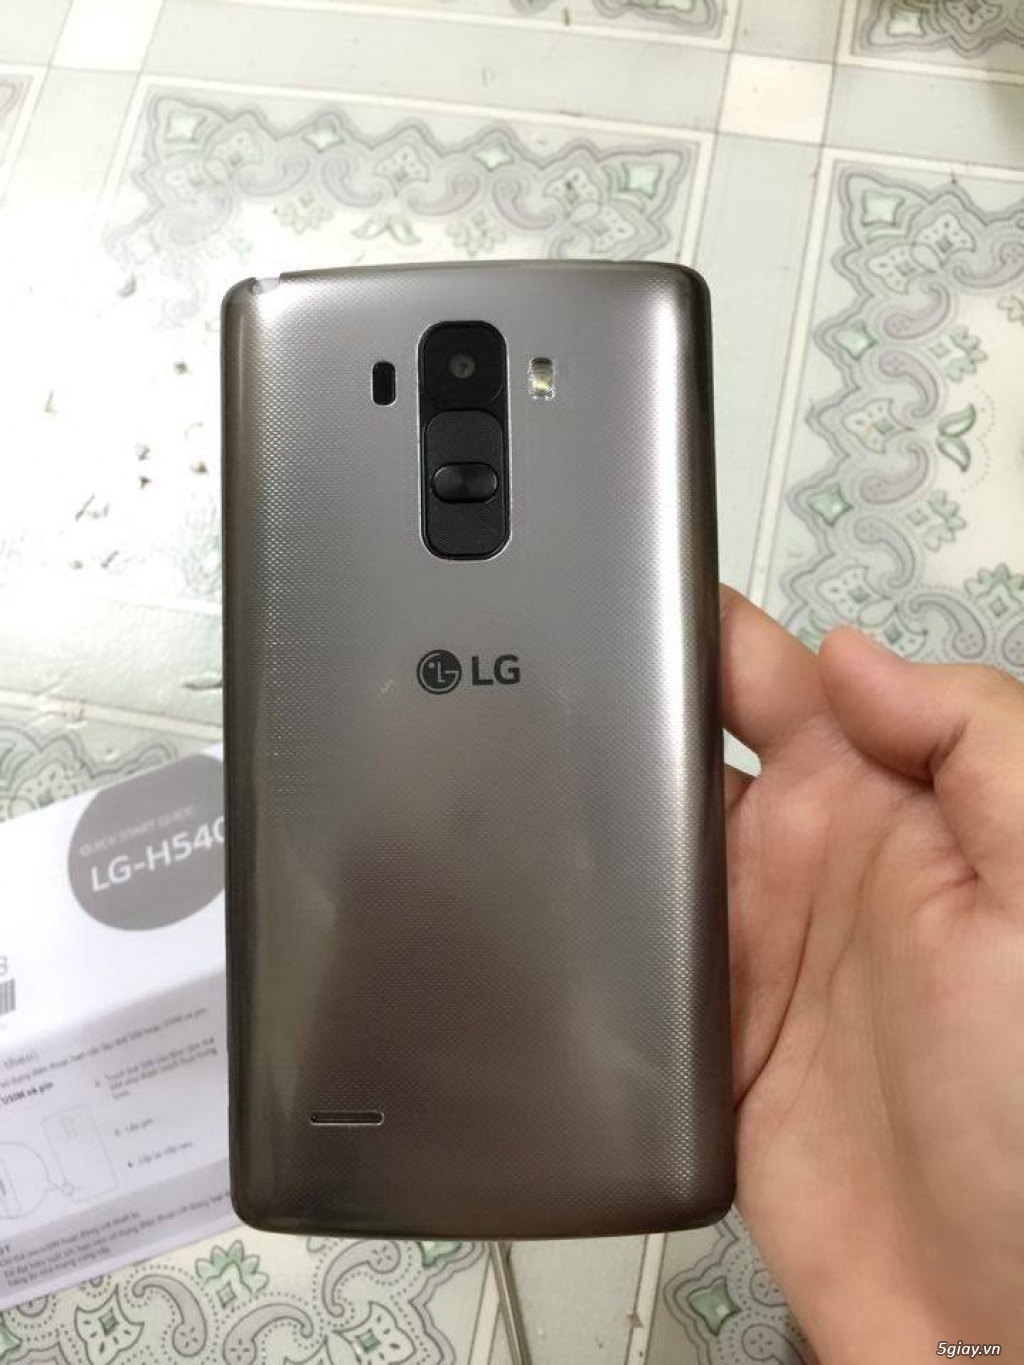 LG G4 Stylus H540 mới mua, fullbox, 2sim 2 sóng, còn bh TGDĐ rất lâu - 2